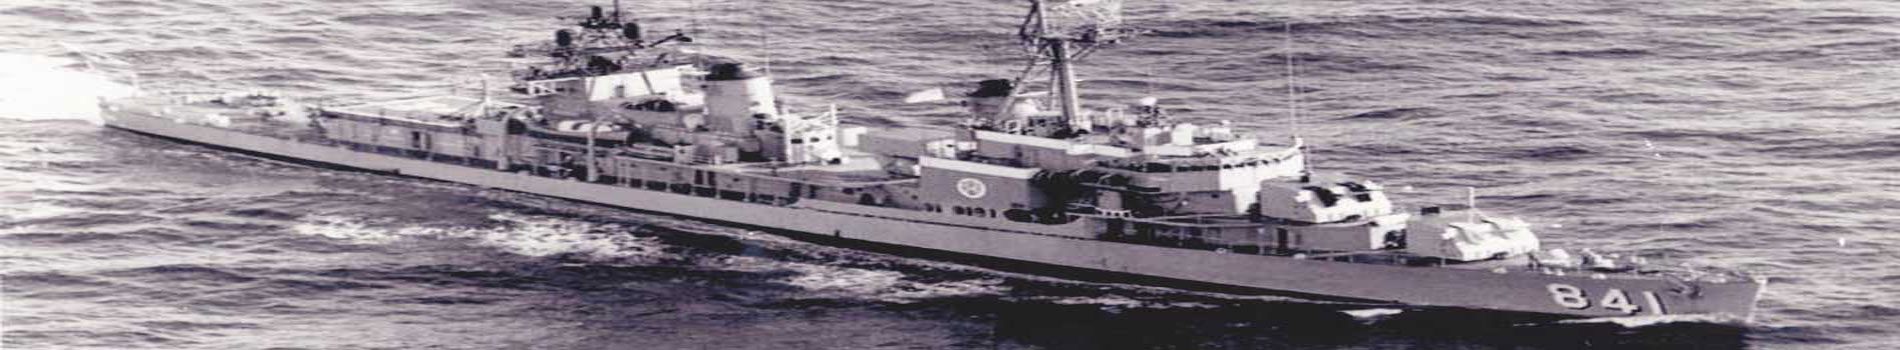 United States Navy destroyer